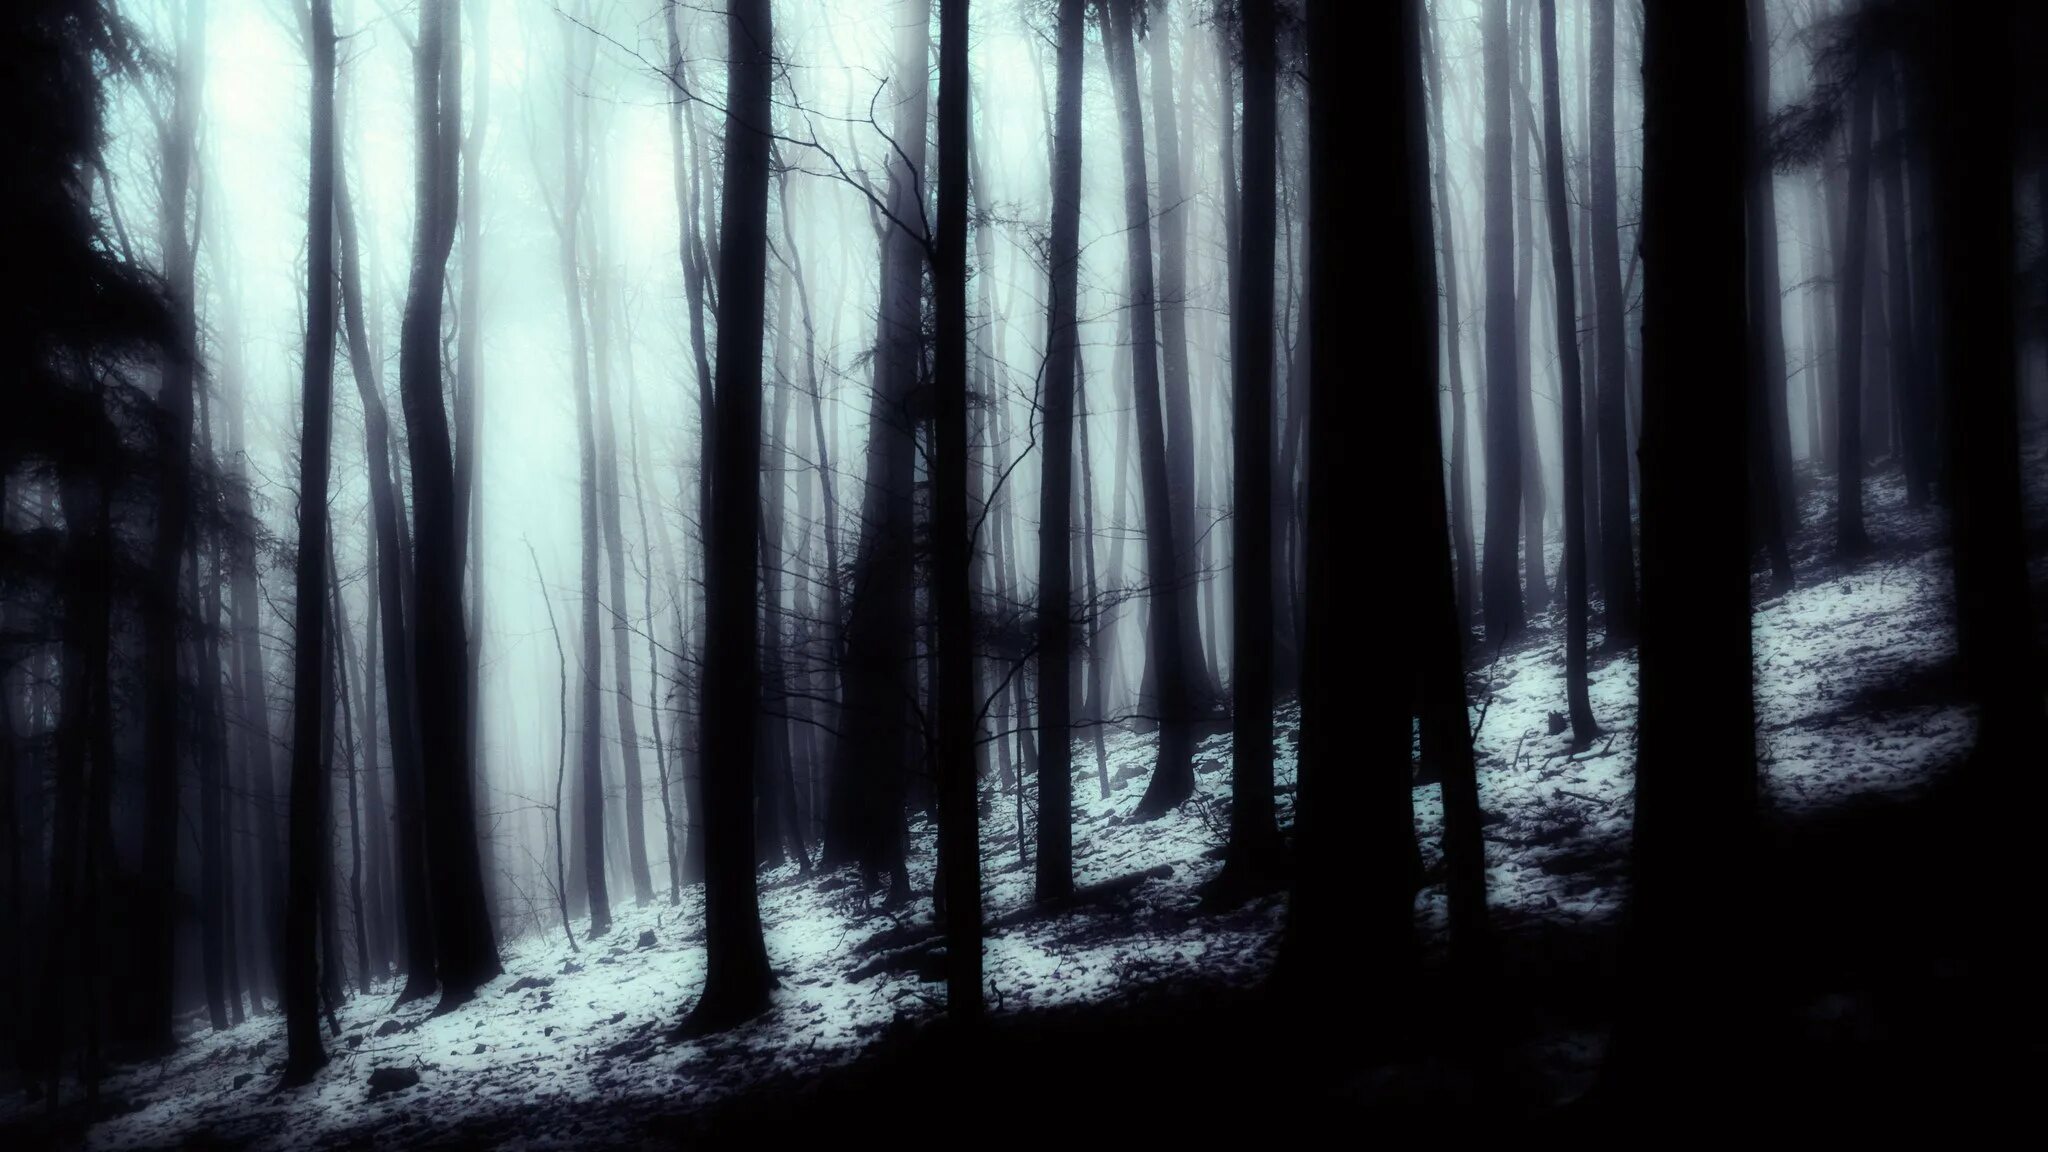 Обои на рабочий мрачные. Темный лес. Лес тёмный мрачный. Страшный лес. Темные леса.